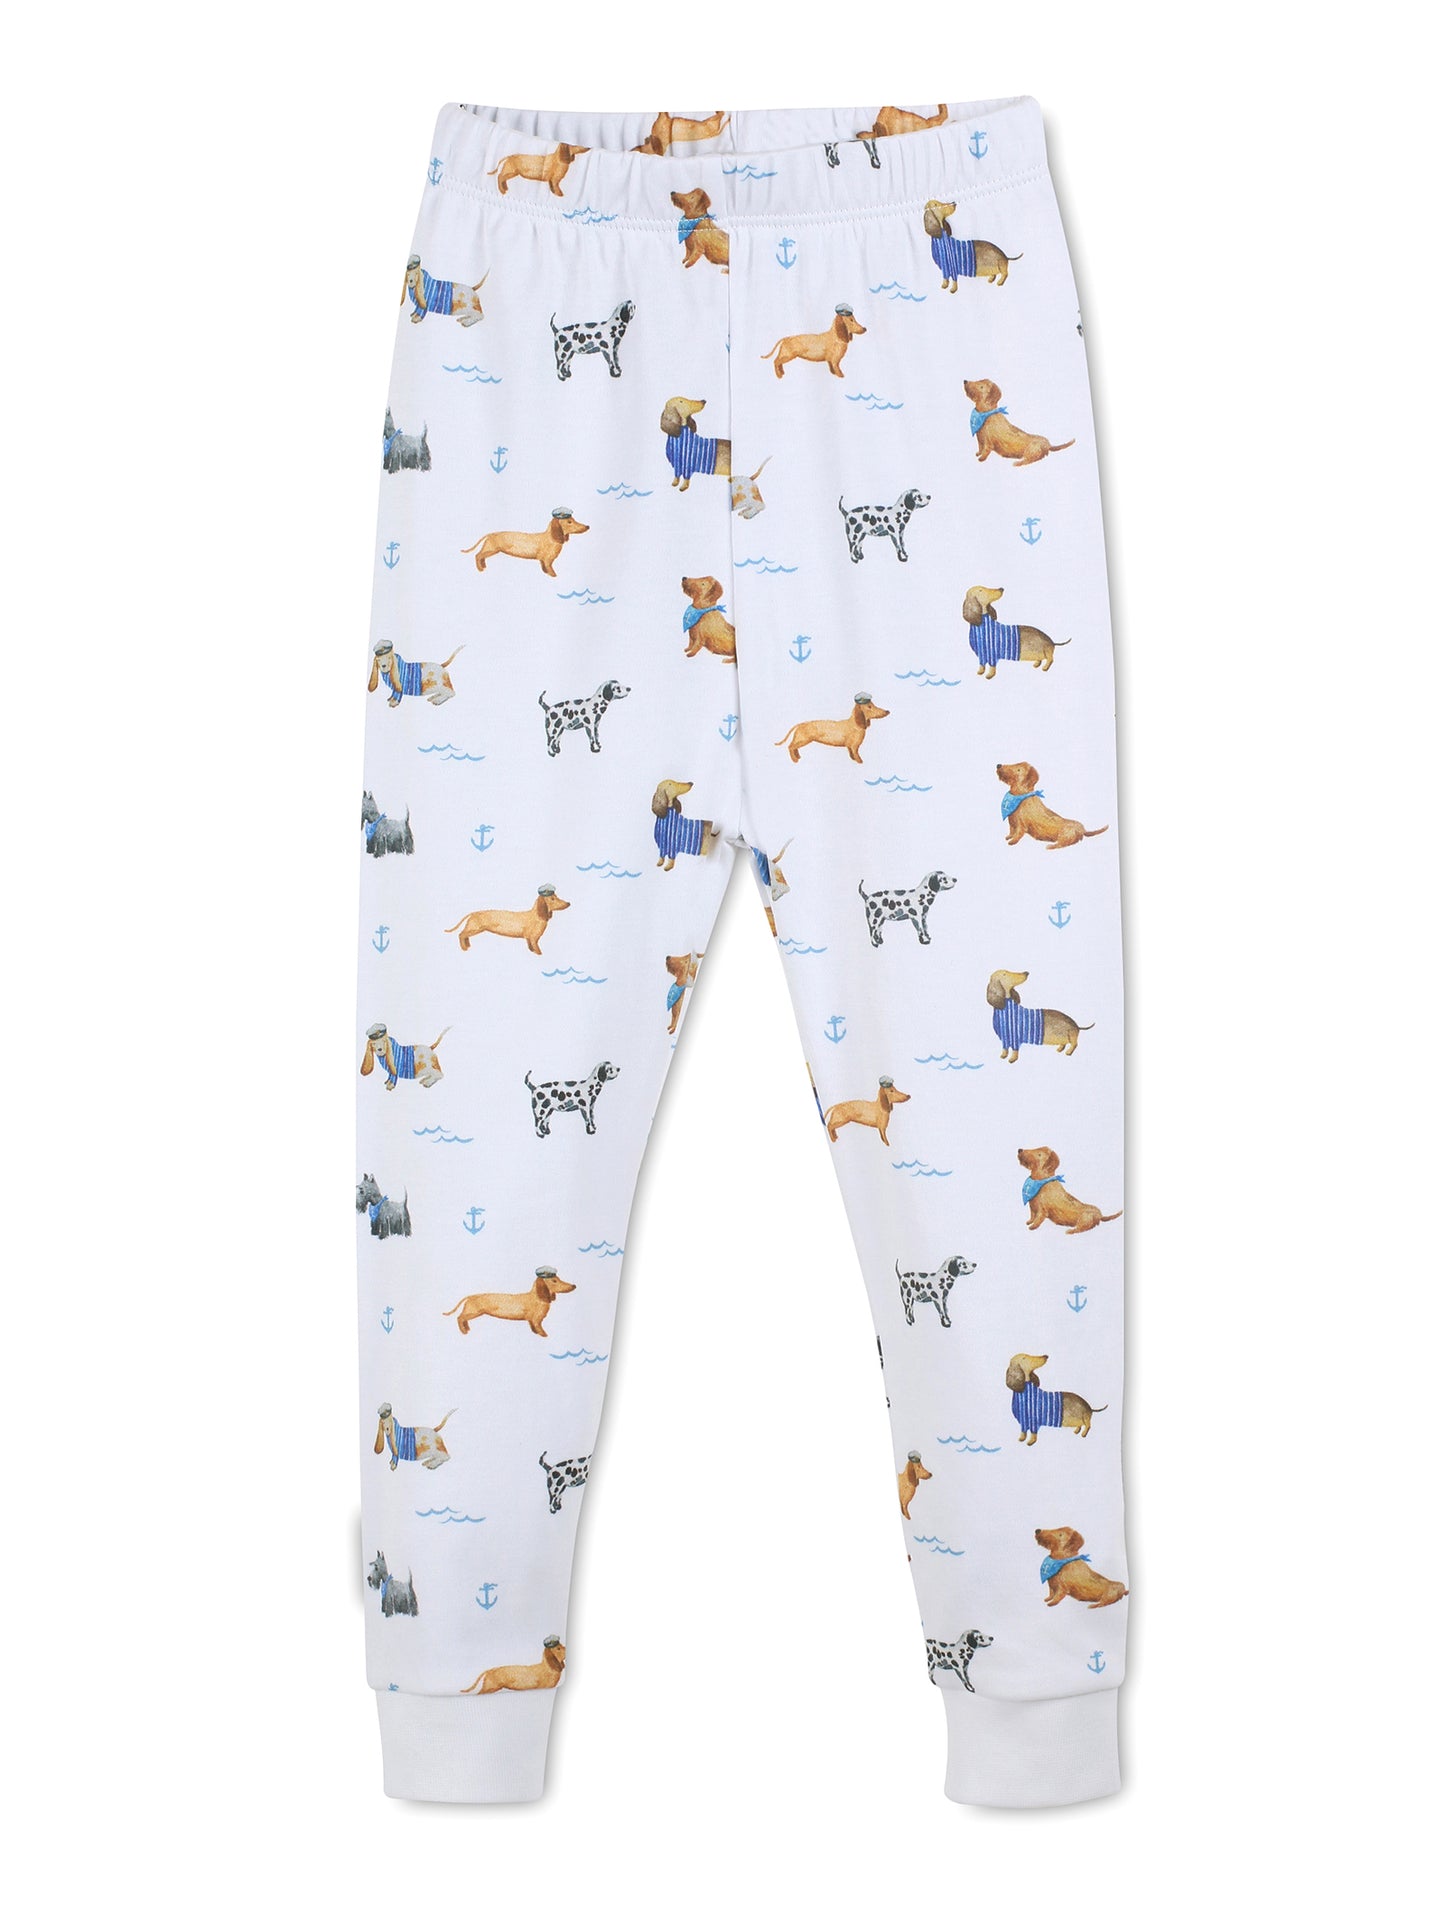 Sailor Puppy Long Pajama Set